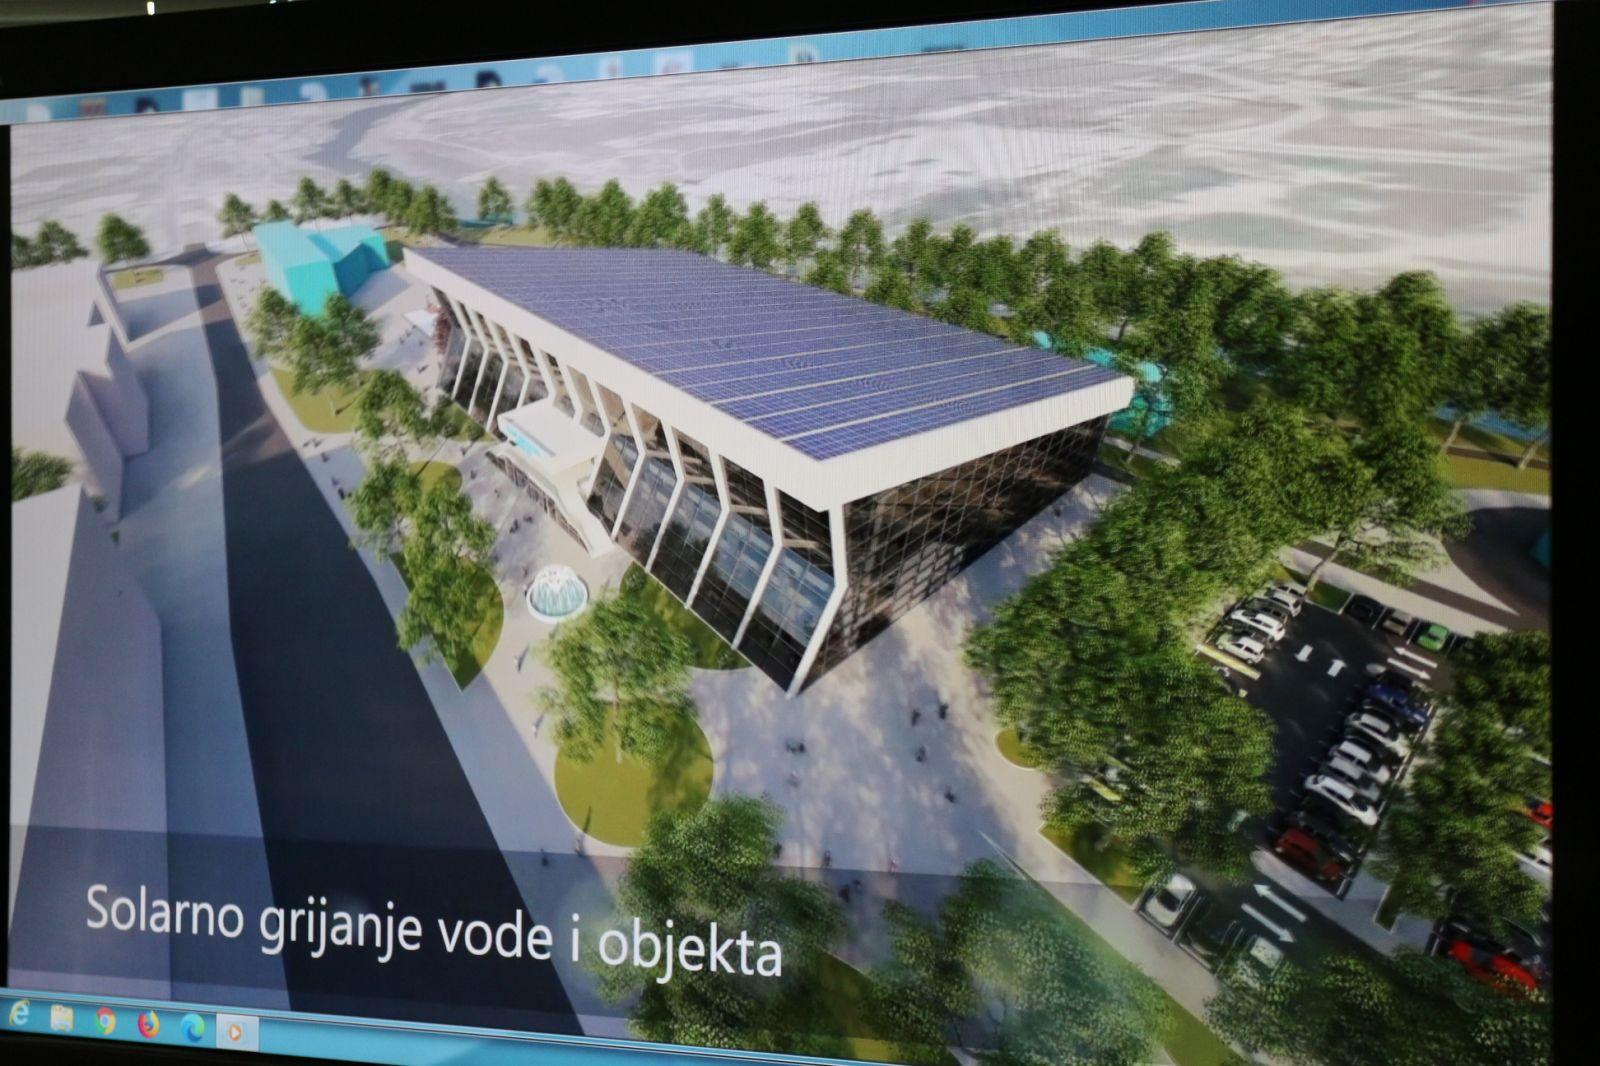 Izgradnja olimpijskog bazena u Mostaru koštala bi 12 miliona KM